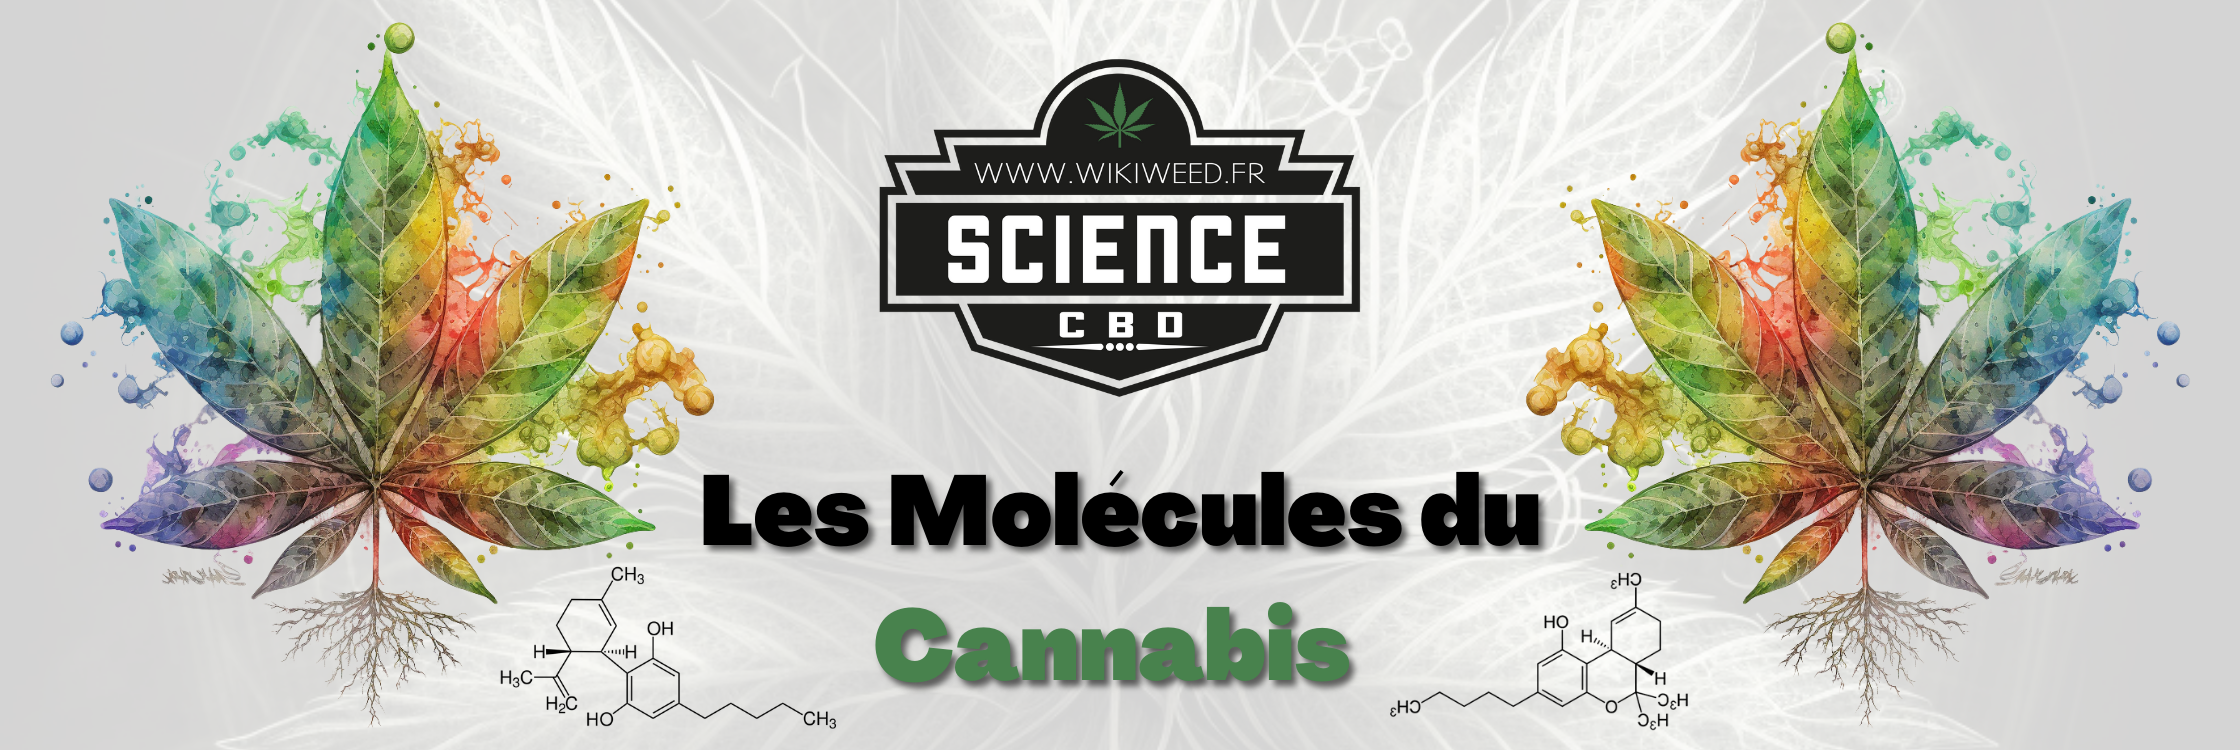 Les Molécules du Cannabis, Chanvre.